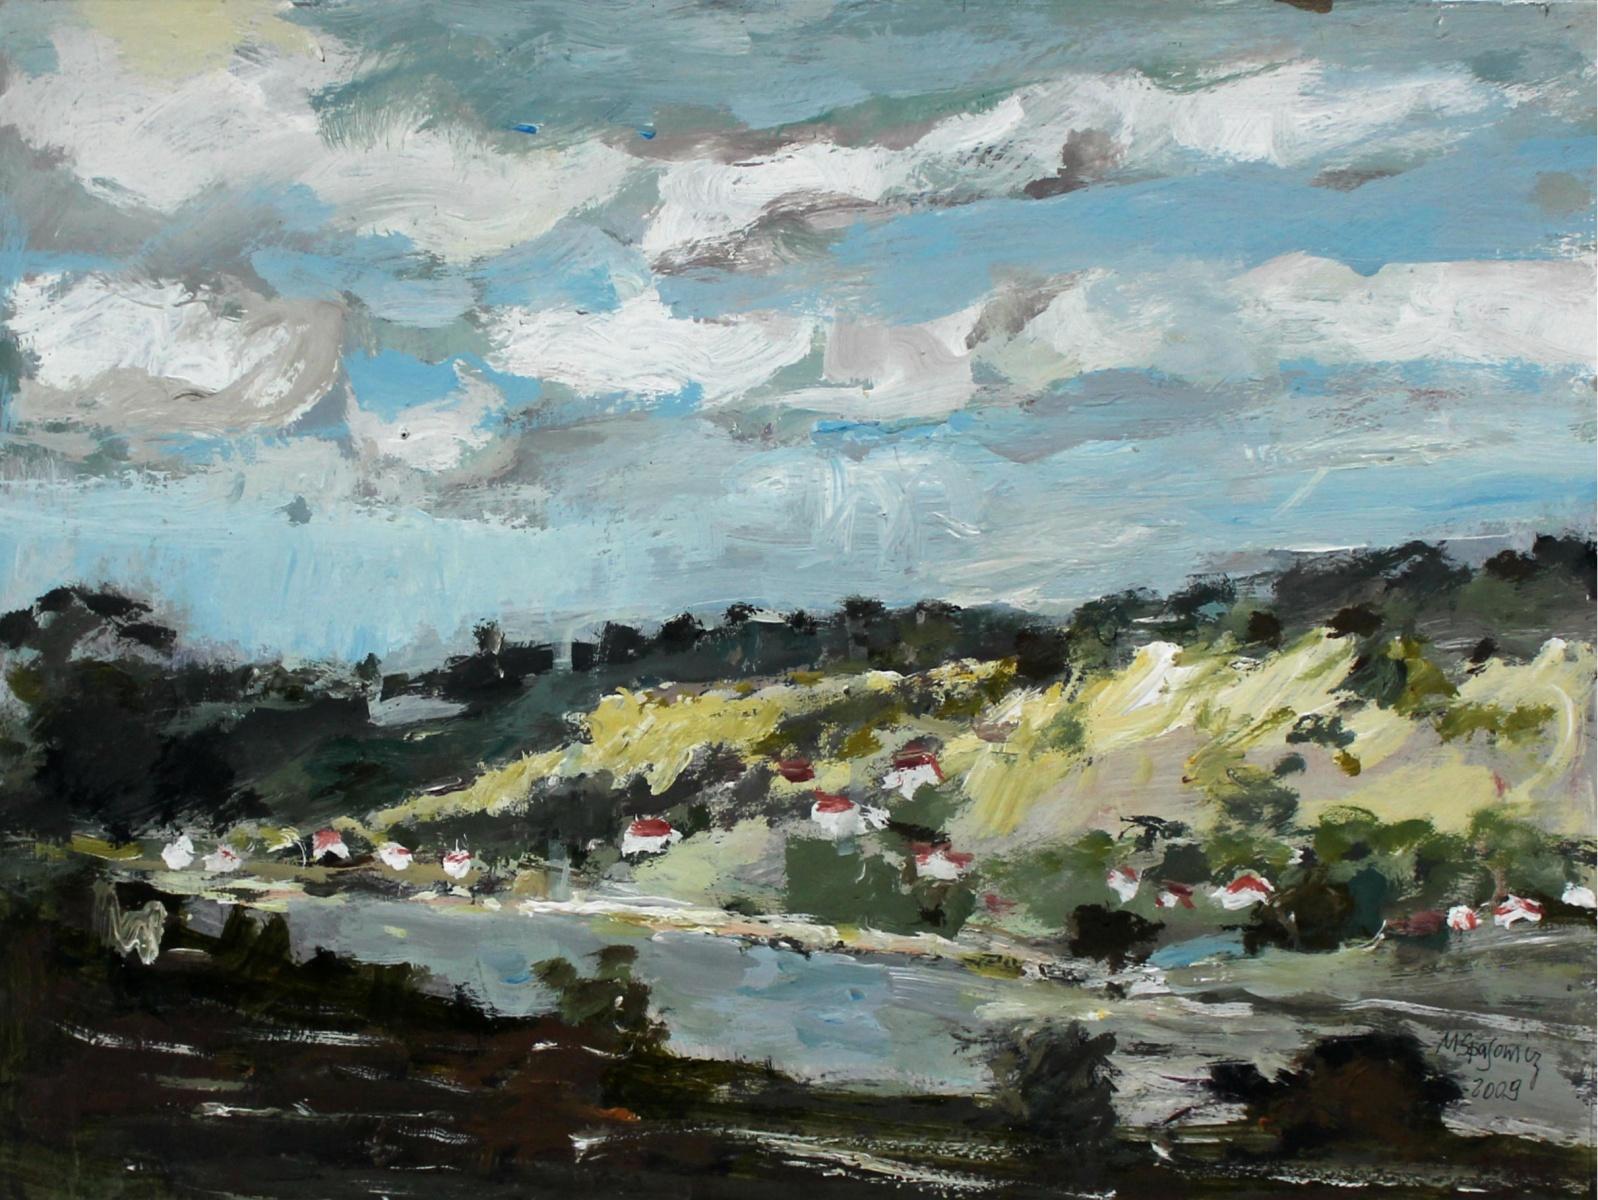 Vistula River - 21th century, Oil on canvas, Figurative, Landscape